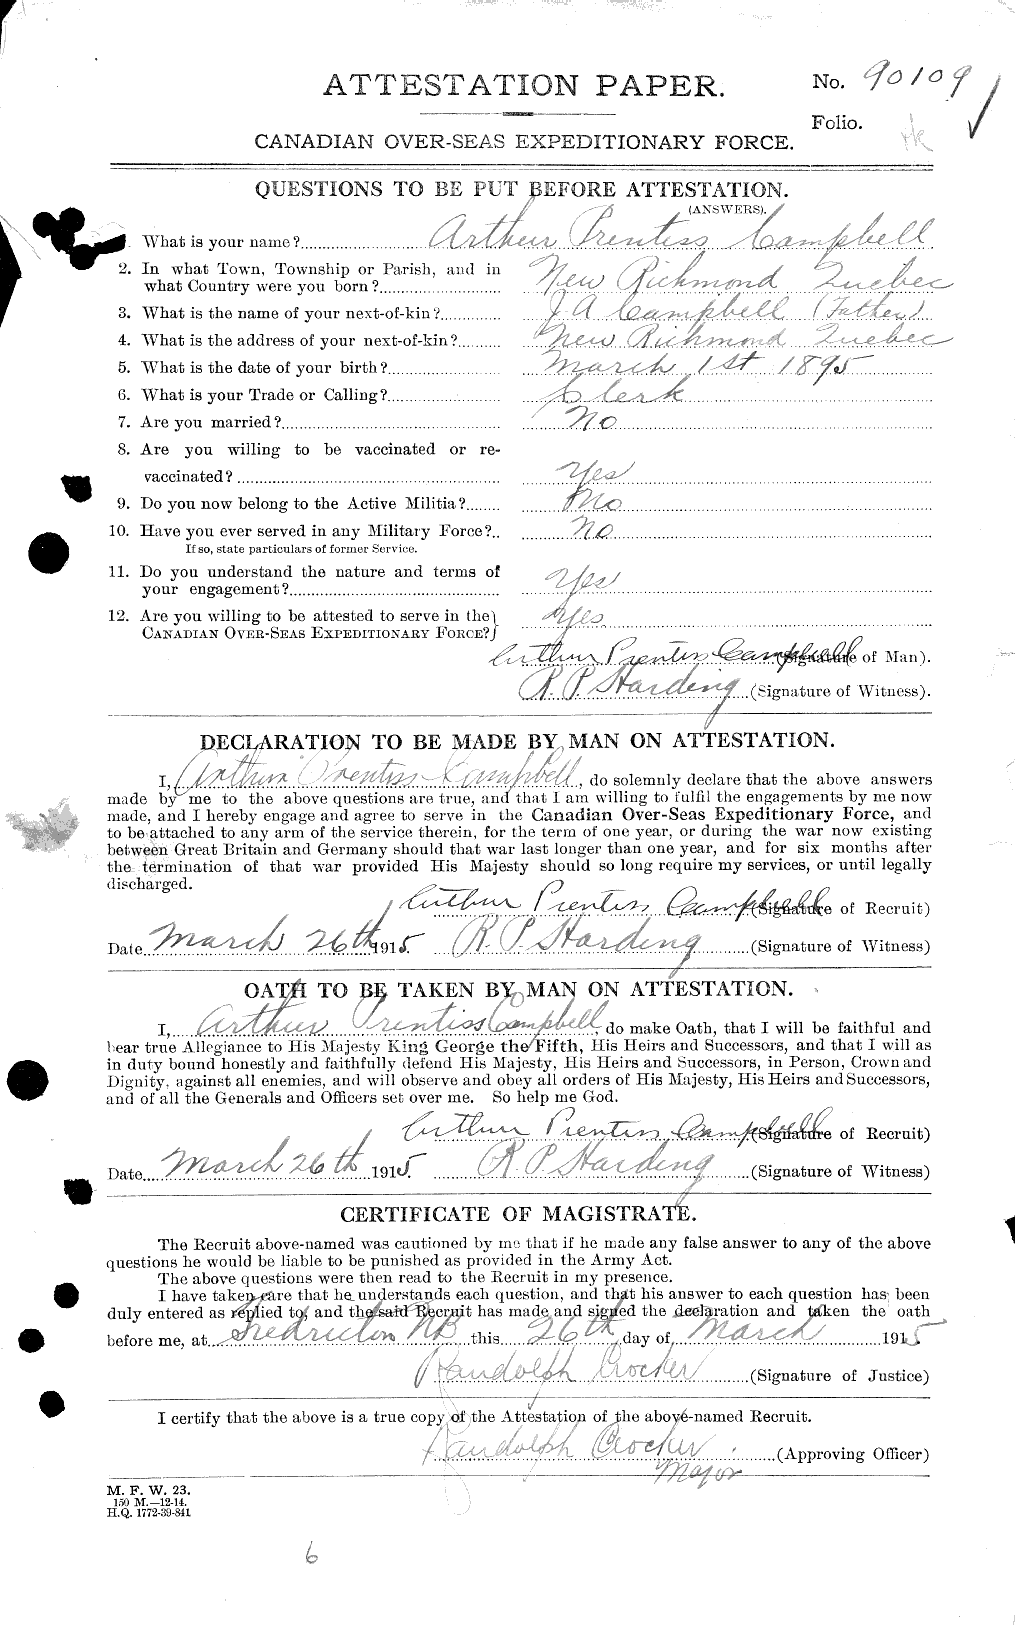 Dossiers du Personnel de la Première Guerre mondiale - CEC 003517a